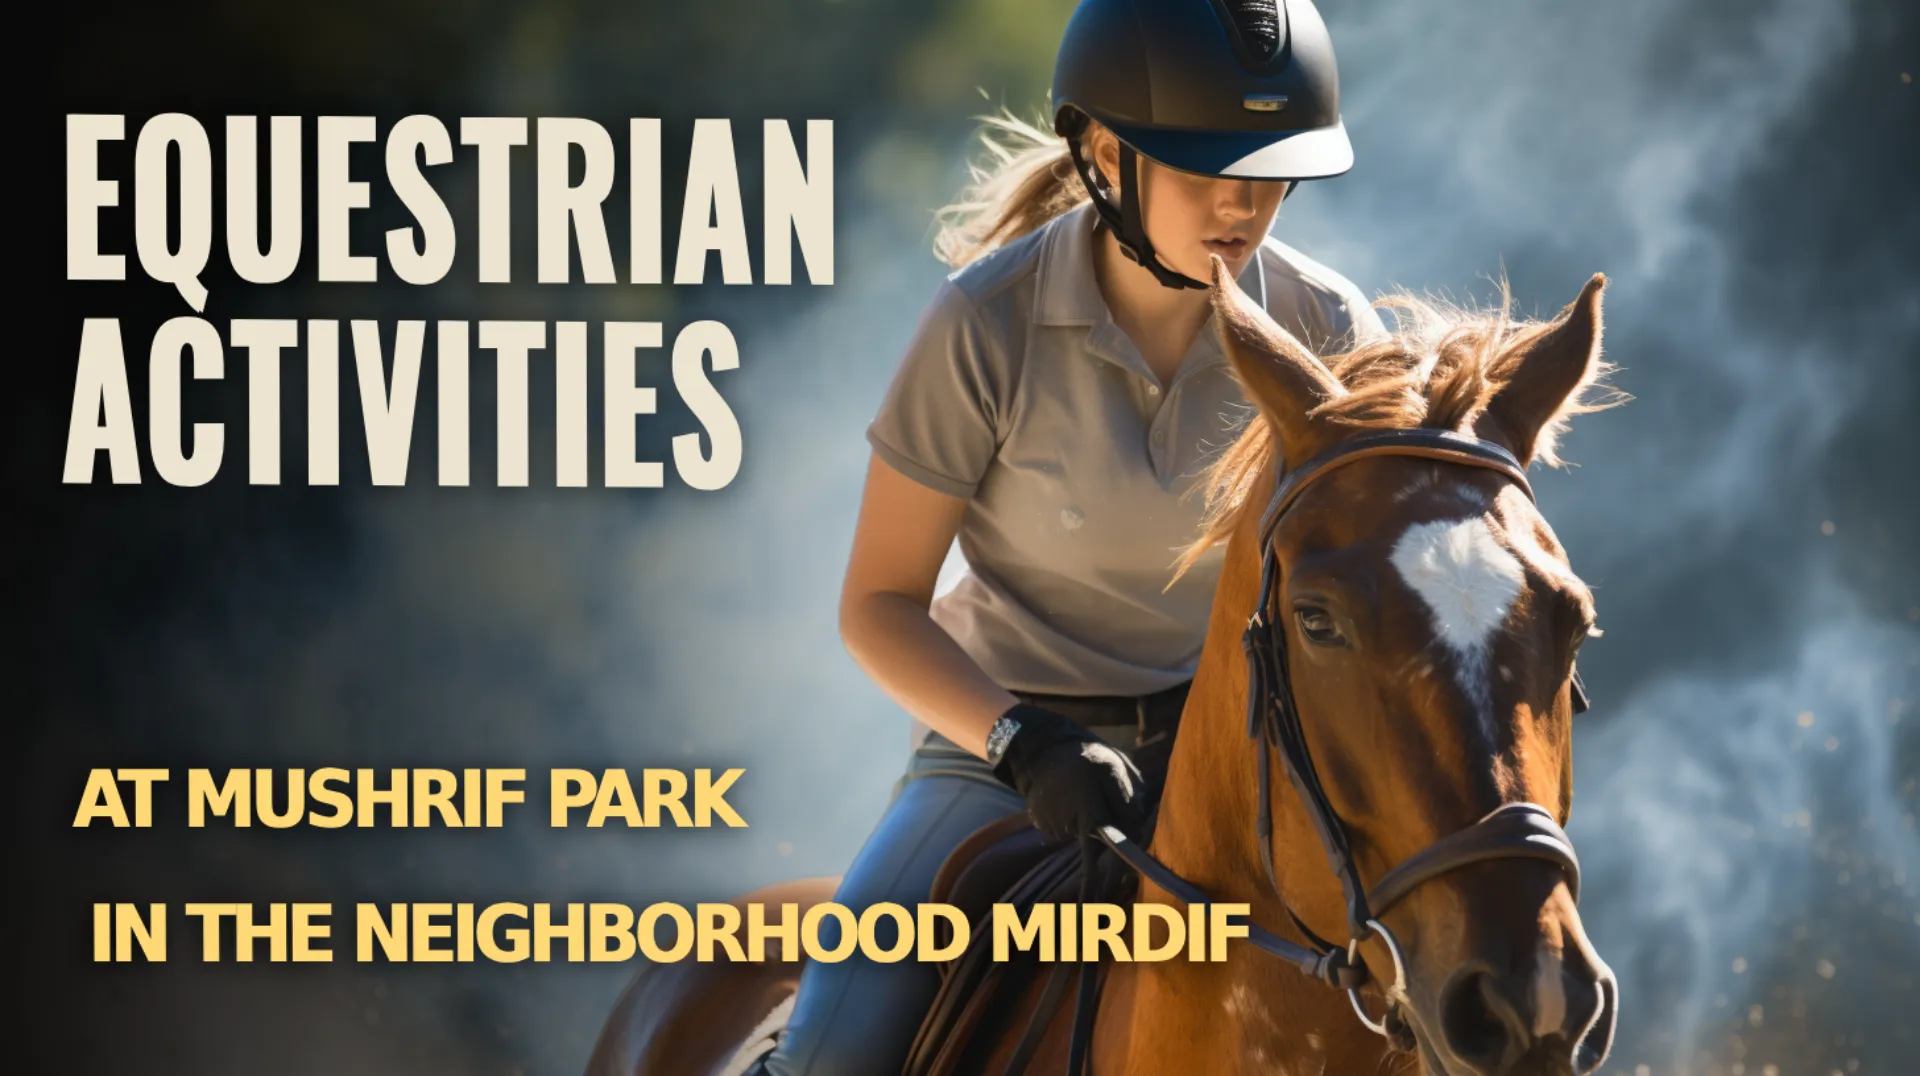 Explore Equestrian Trails in Mushrif Park